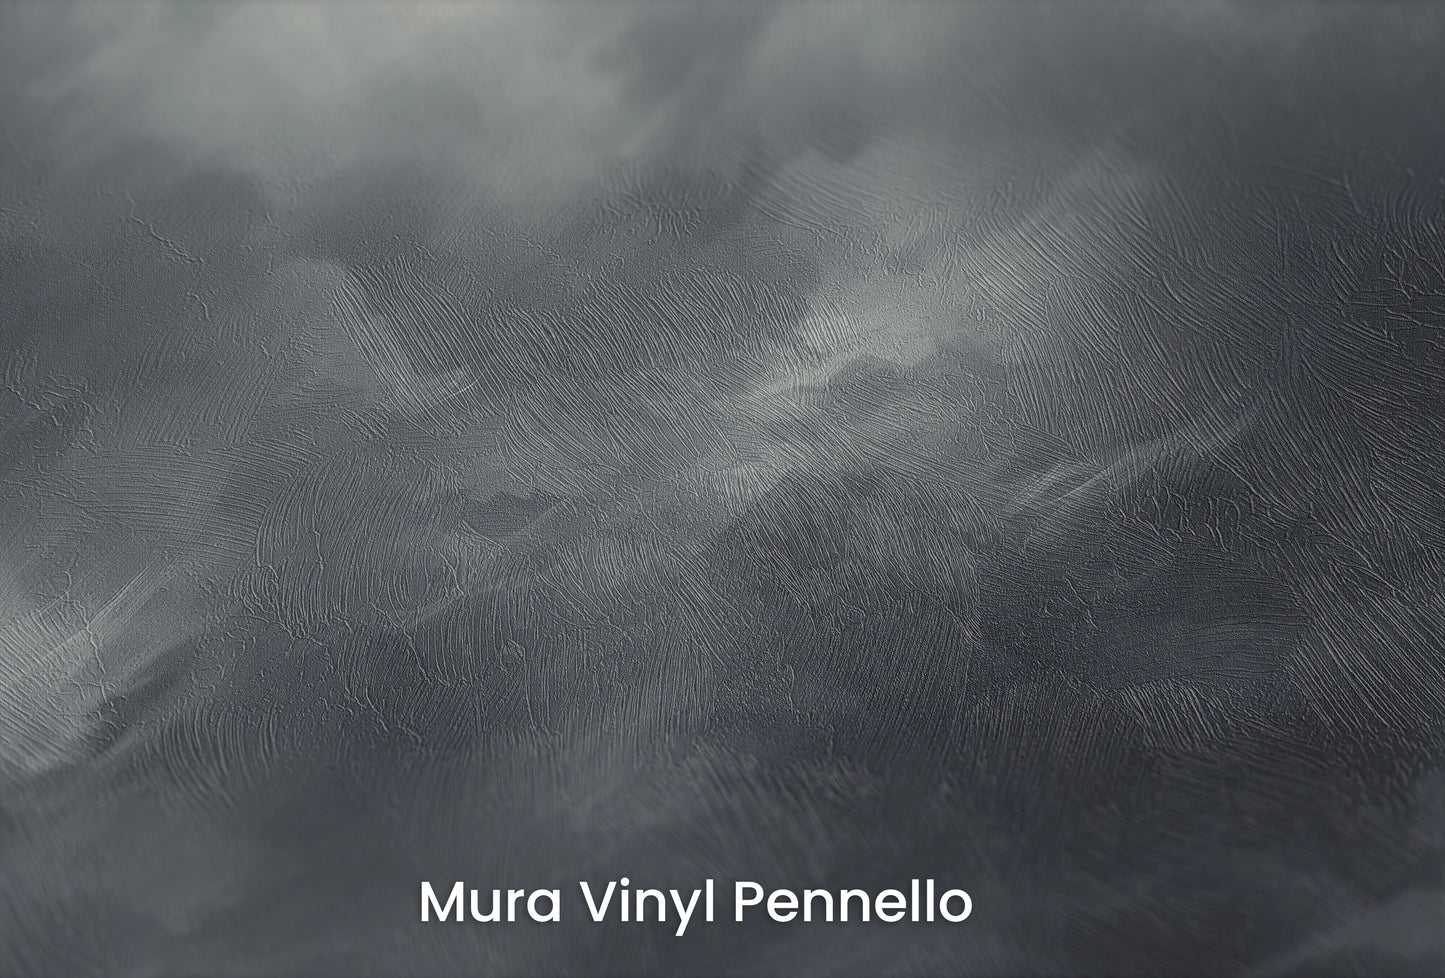 Zbliżenie na artystyczną fototapetę o nazwie Serene Monochrome na podłożu Mura Vinyl Pennello - faktura pociągnięć pędzla malarskiego.